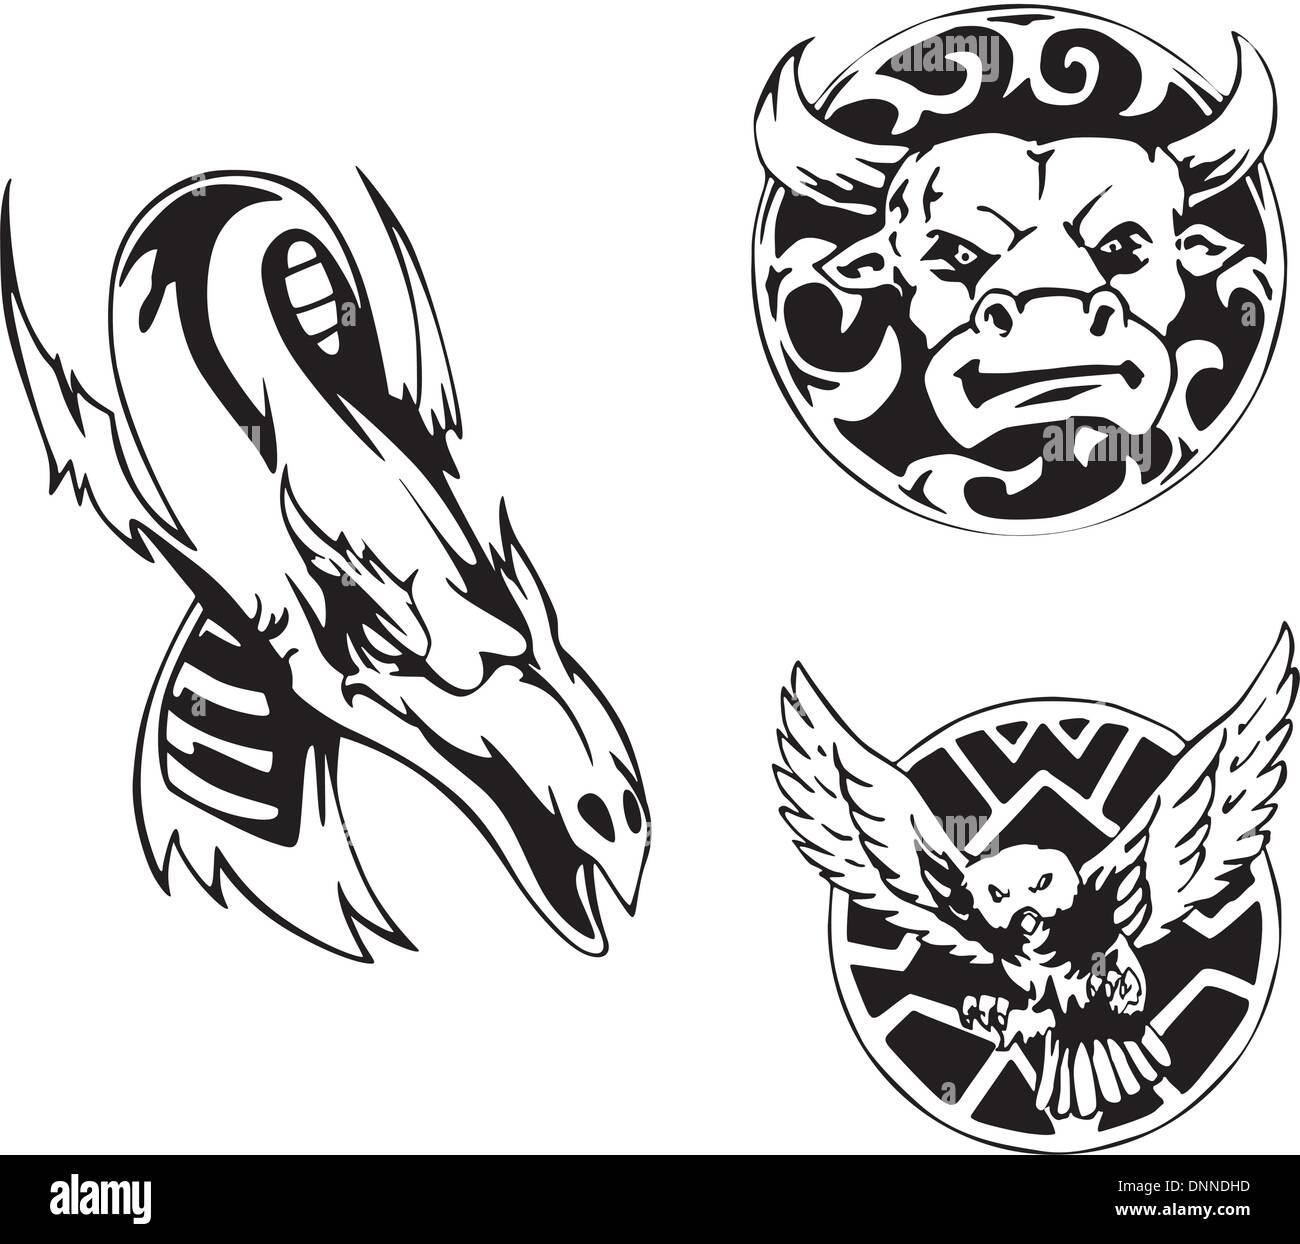 Trois motifs de tatouage animal avec Bull, dragon et Owl. Série d'illustrations vectorielles en noir et blanc. Illustration de Vecteur